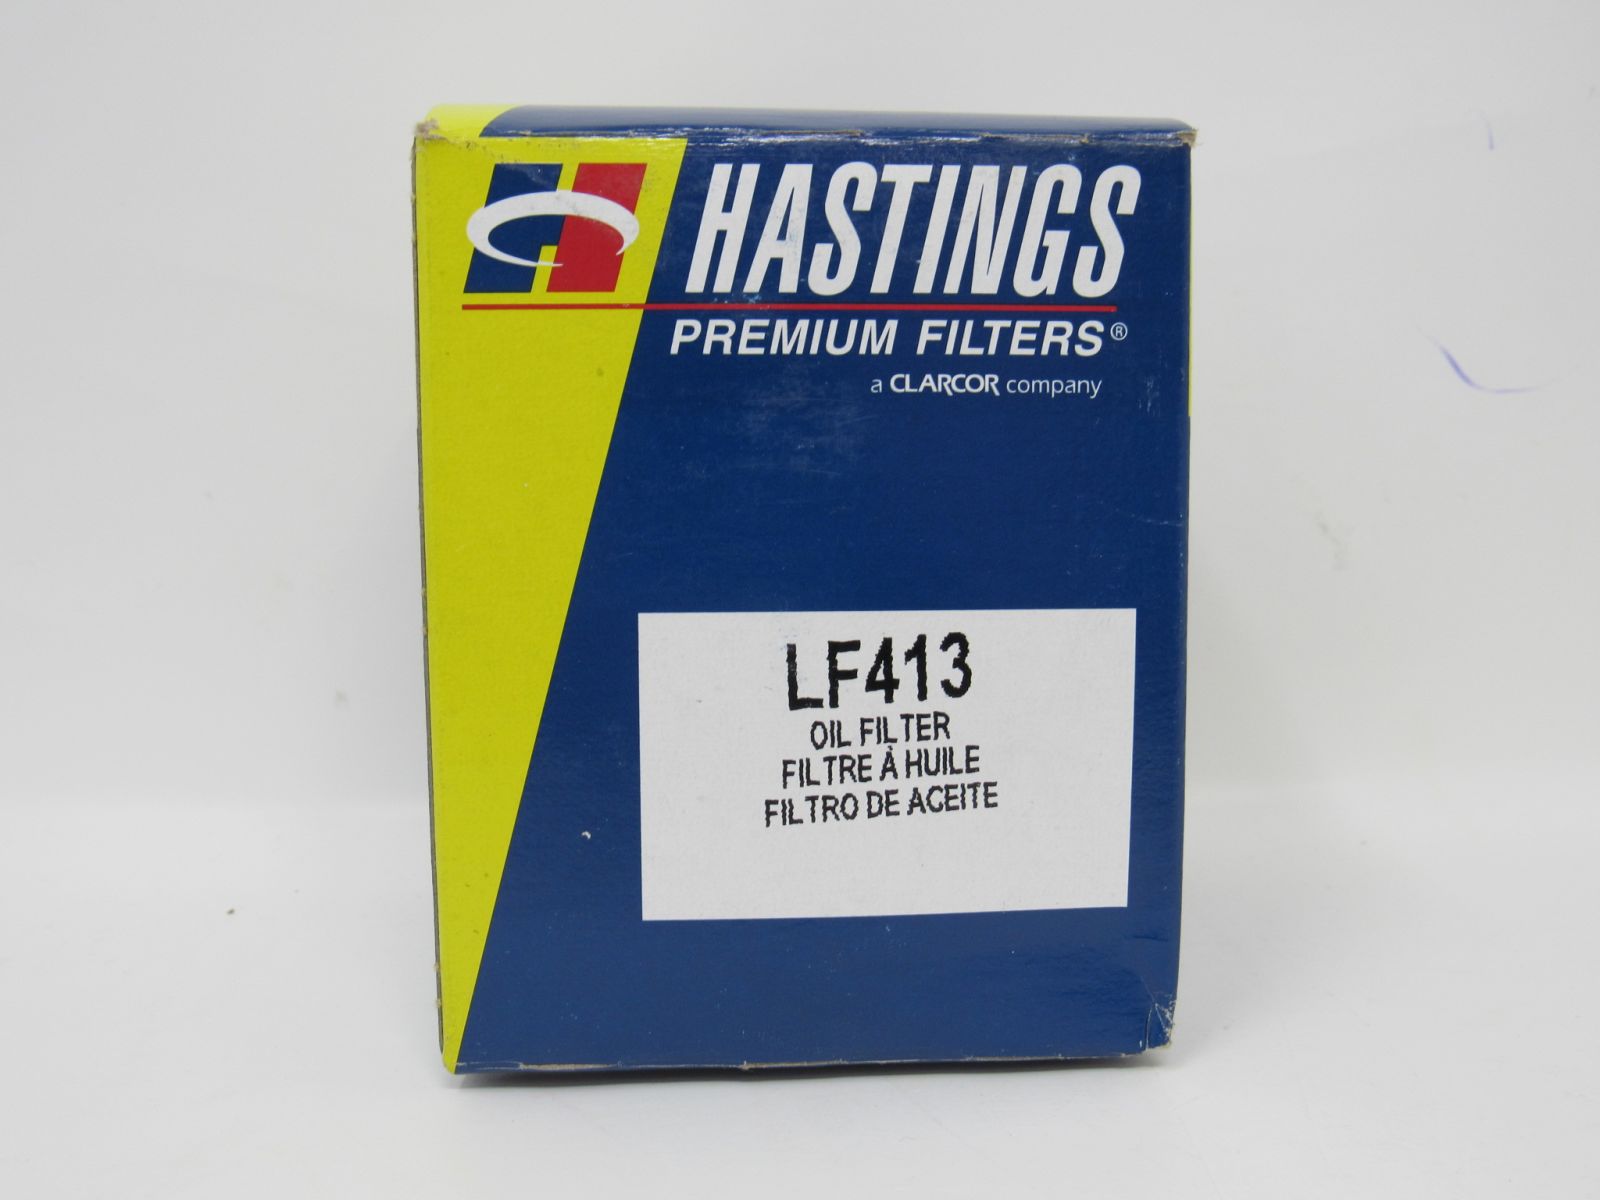 Hastings Premium Filters Oil Filter LF413 -- New